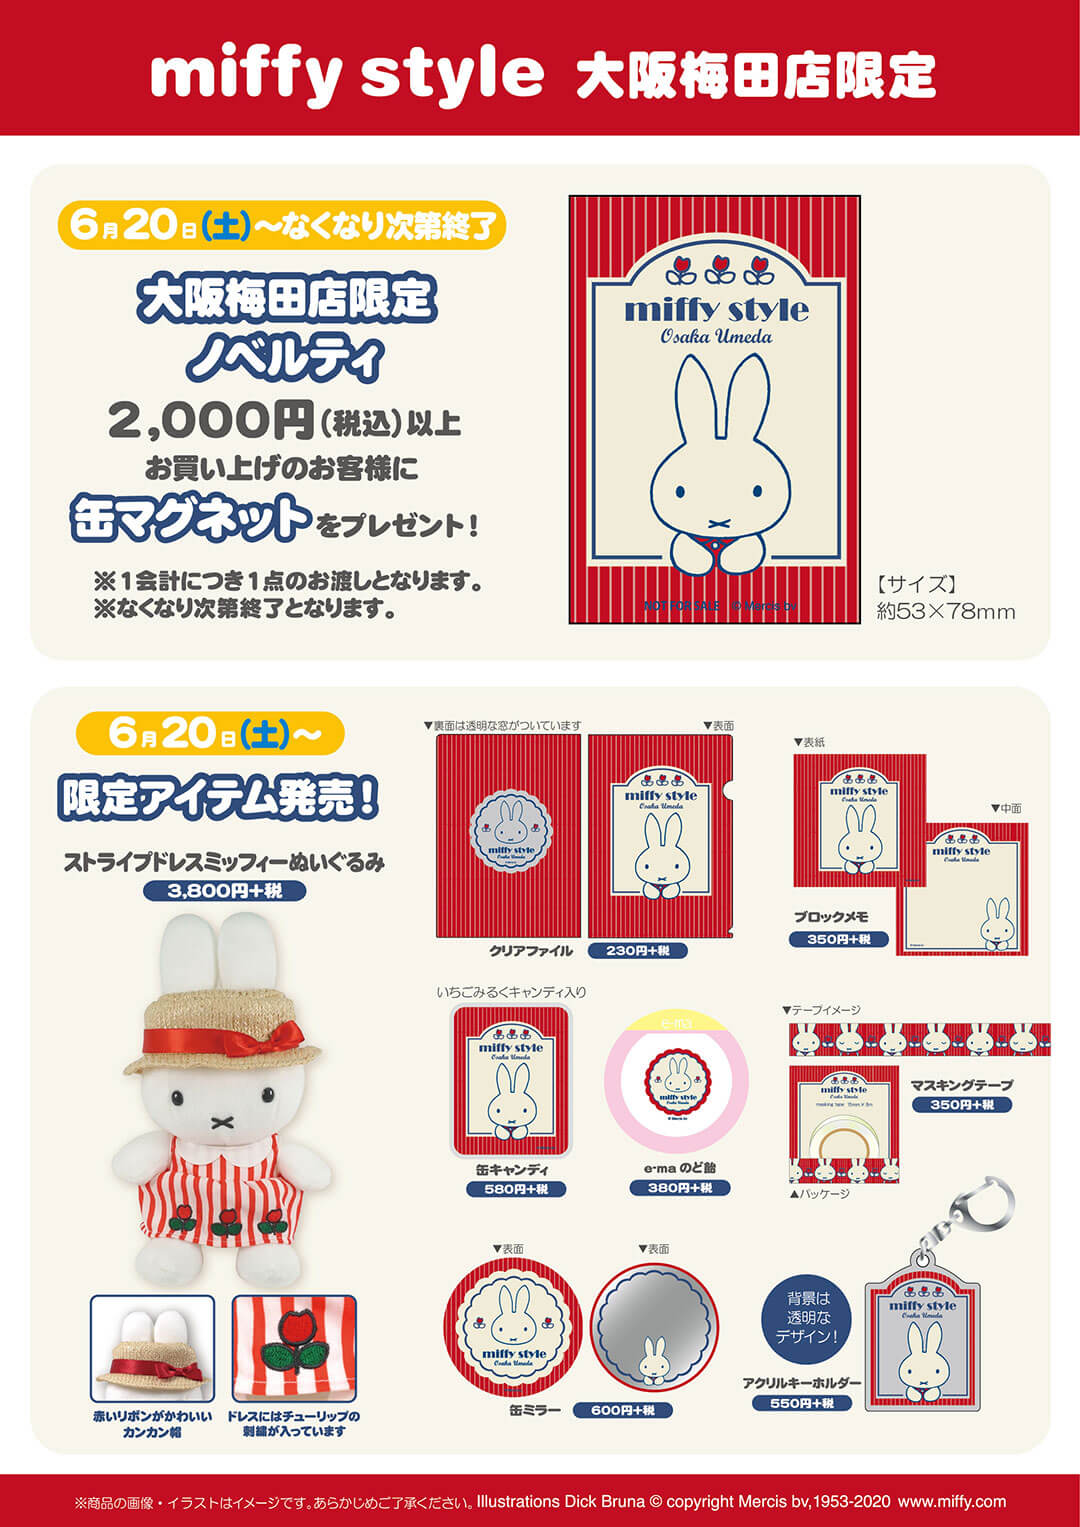 6月20日 土 発売予定 Miffy Style 大阪梅田店限定アイテム キデイランドへようこそ